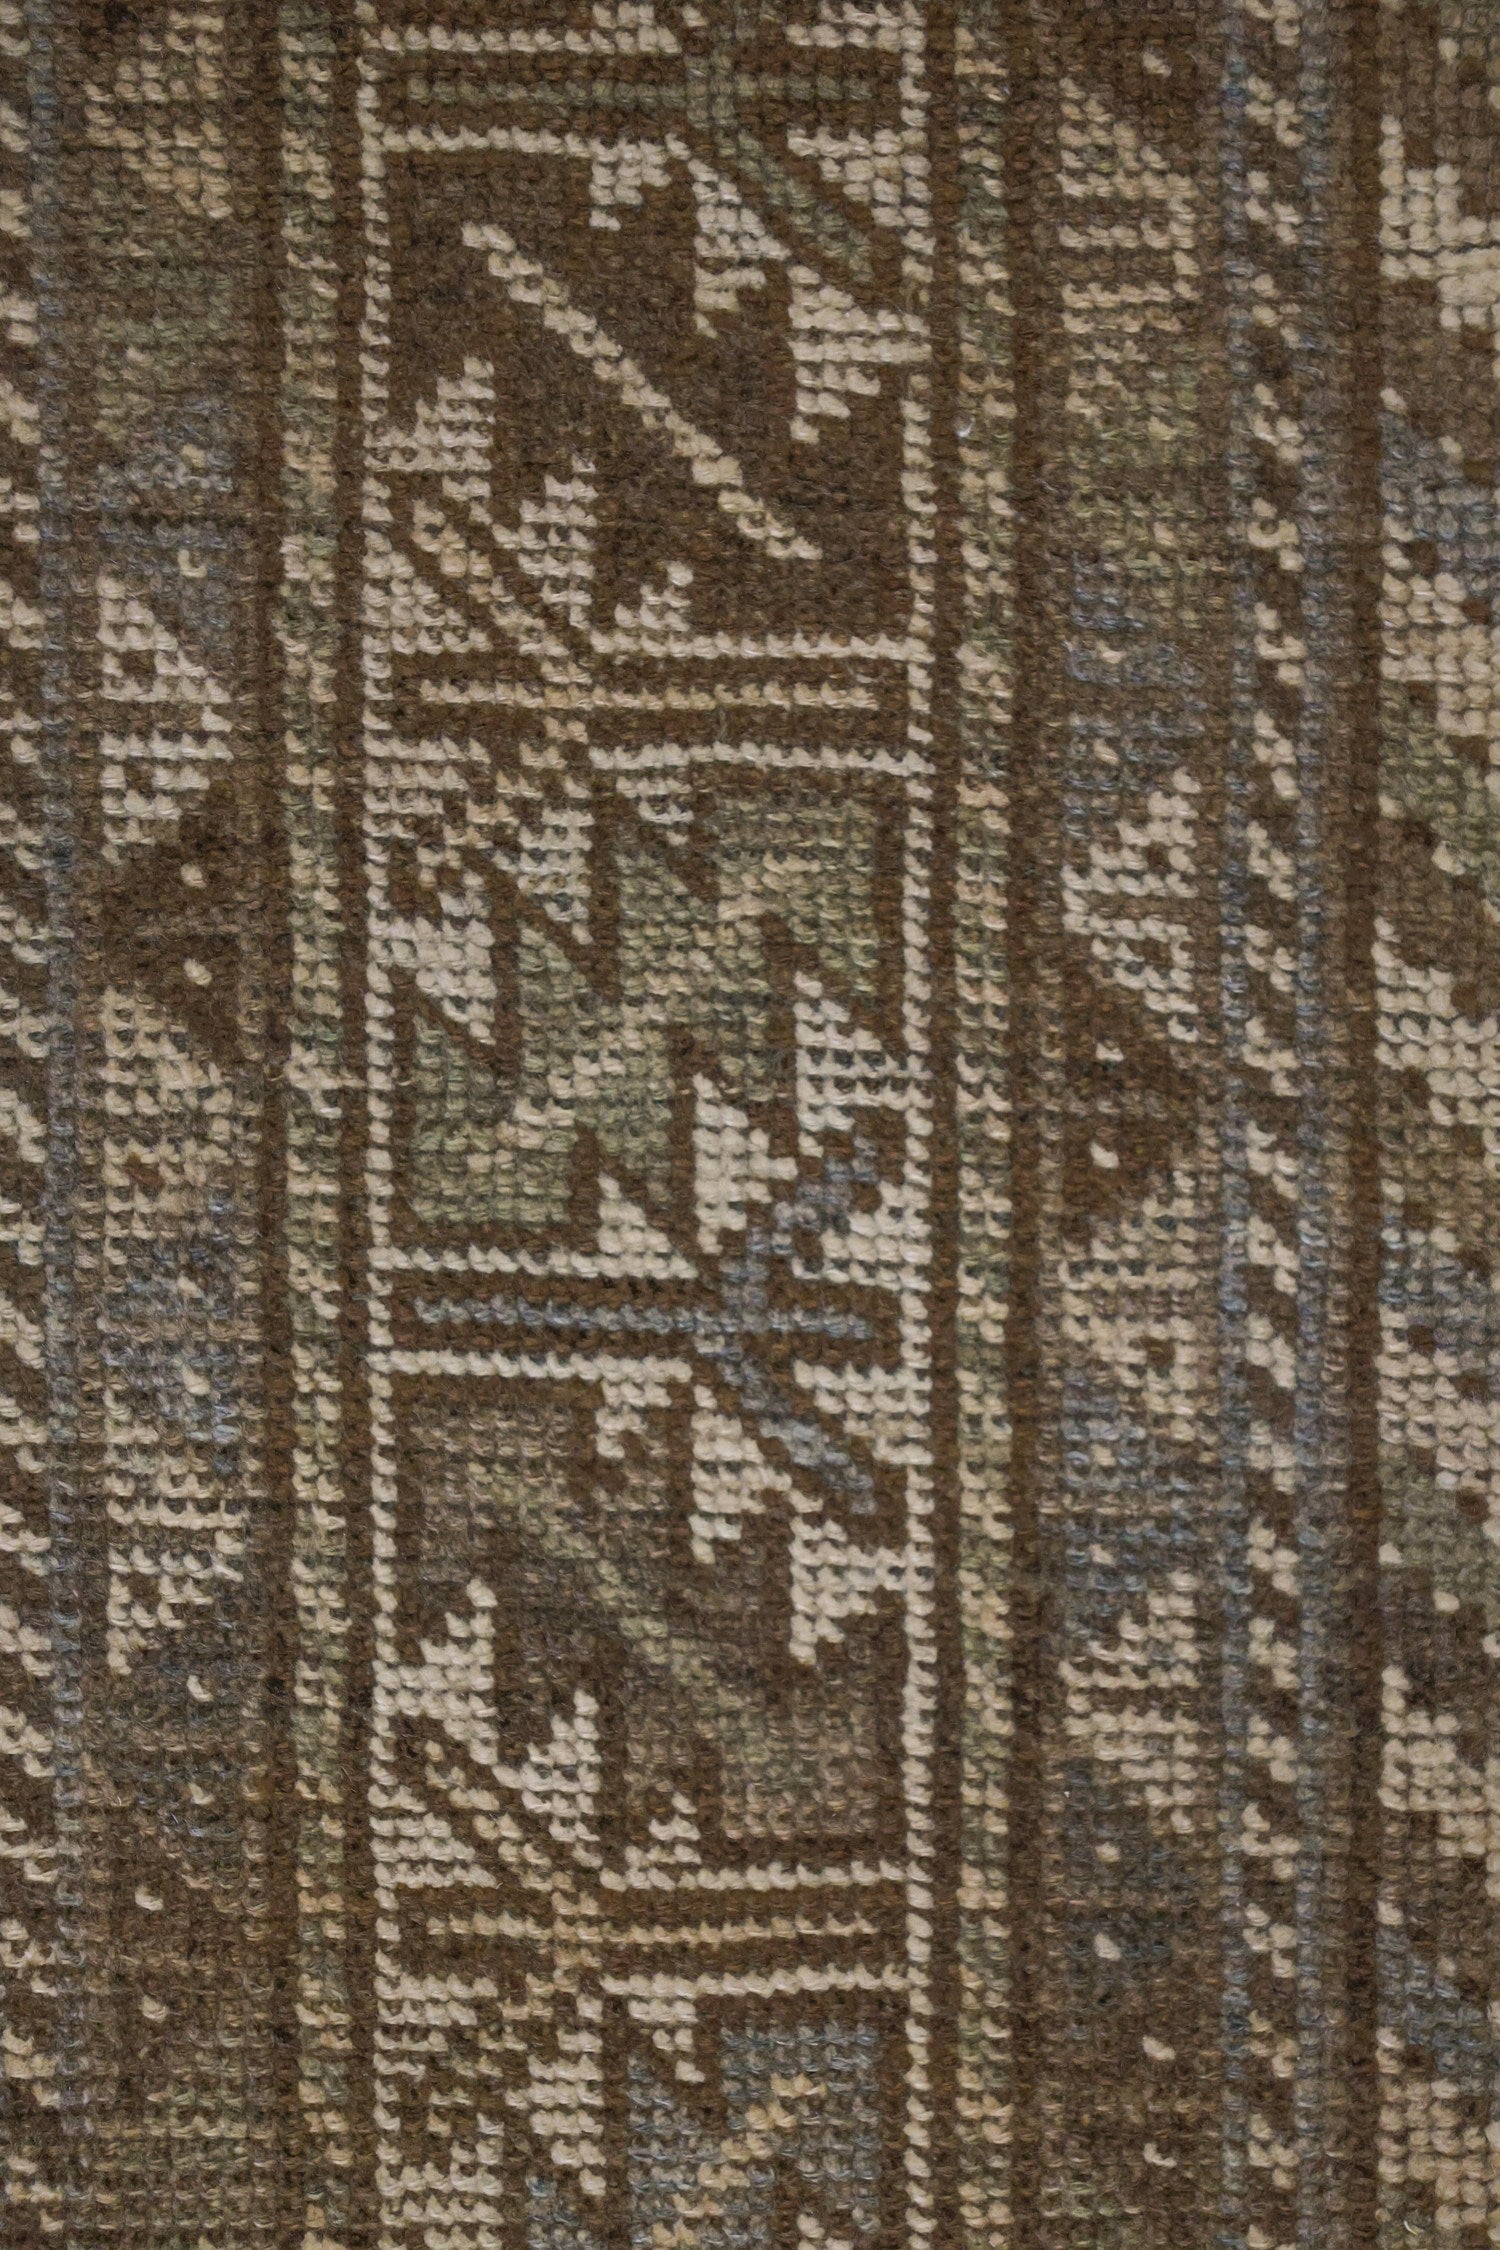 Vintage Shiraz Handwoven Tribal Rug, J68316